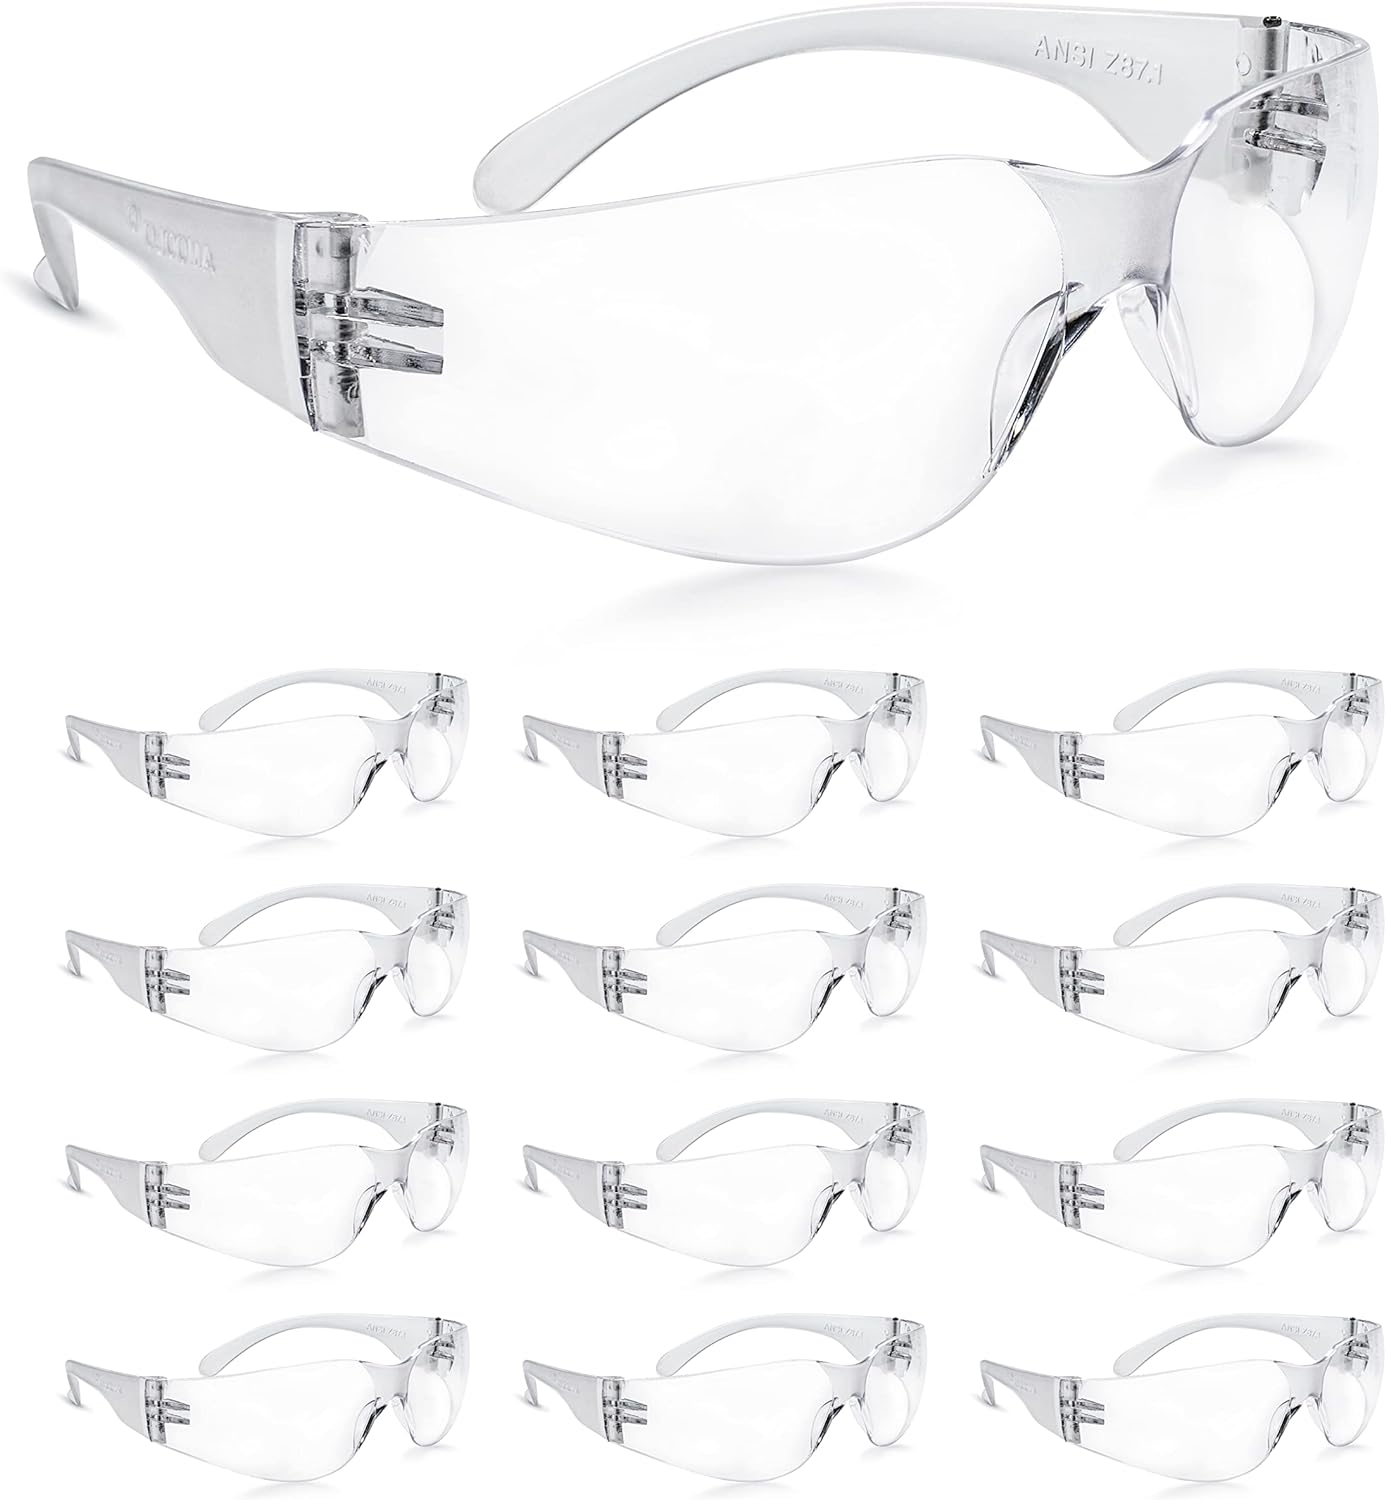 z87 safety glasses